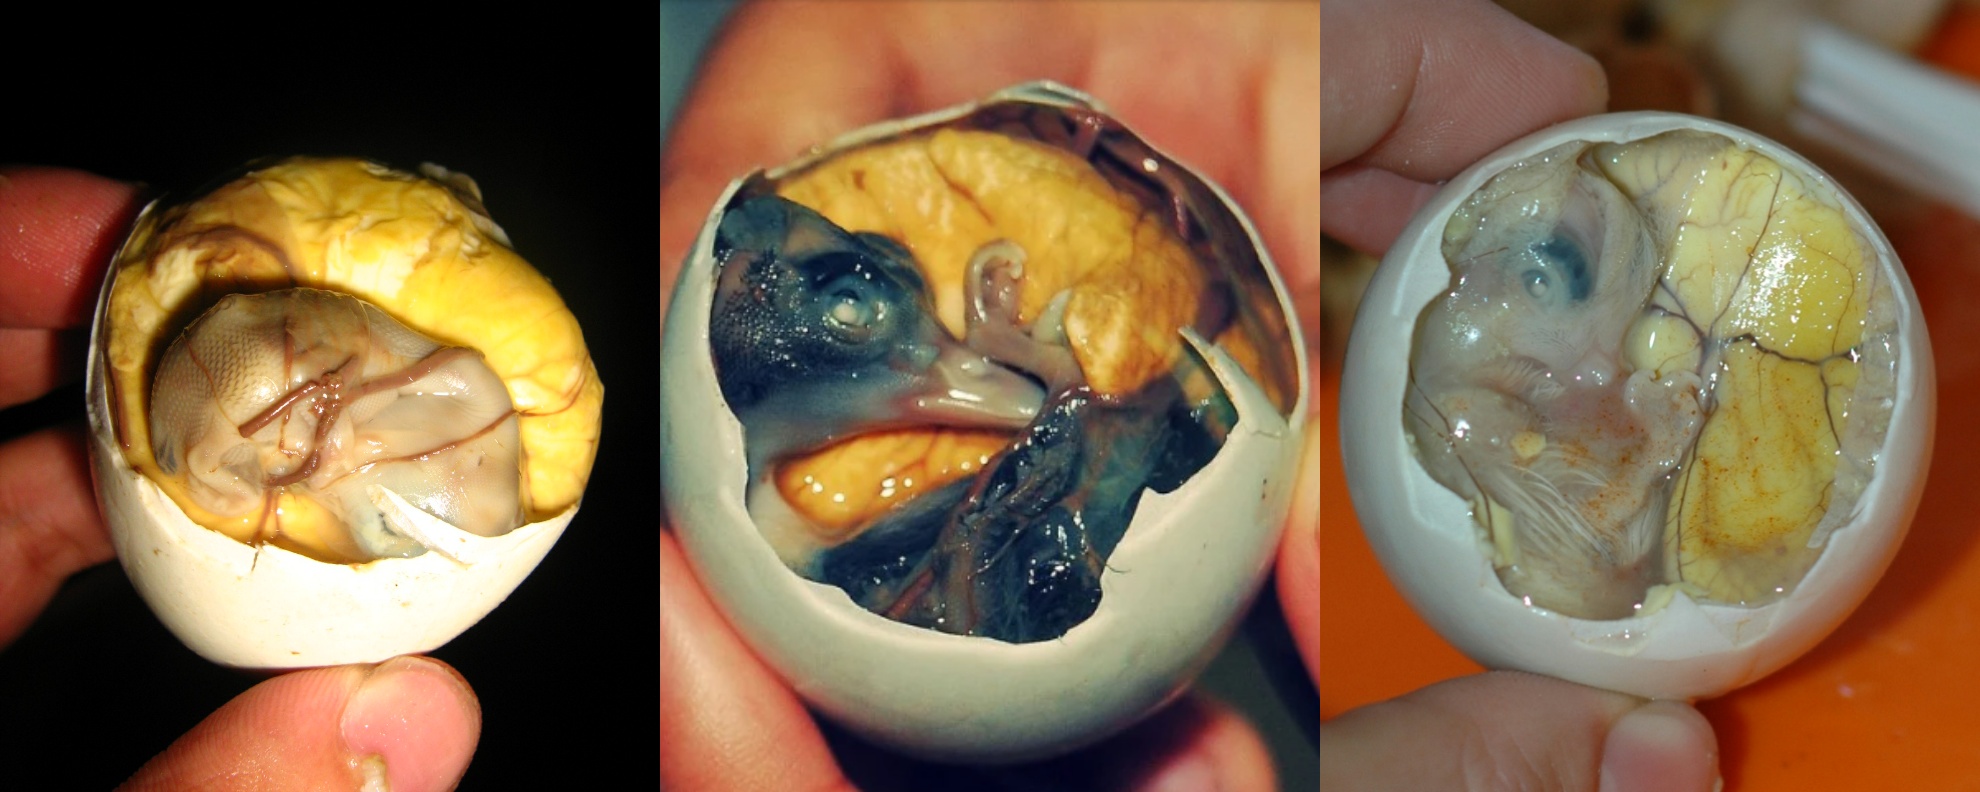 Яйцо с зародышем